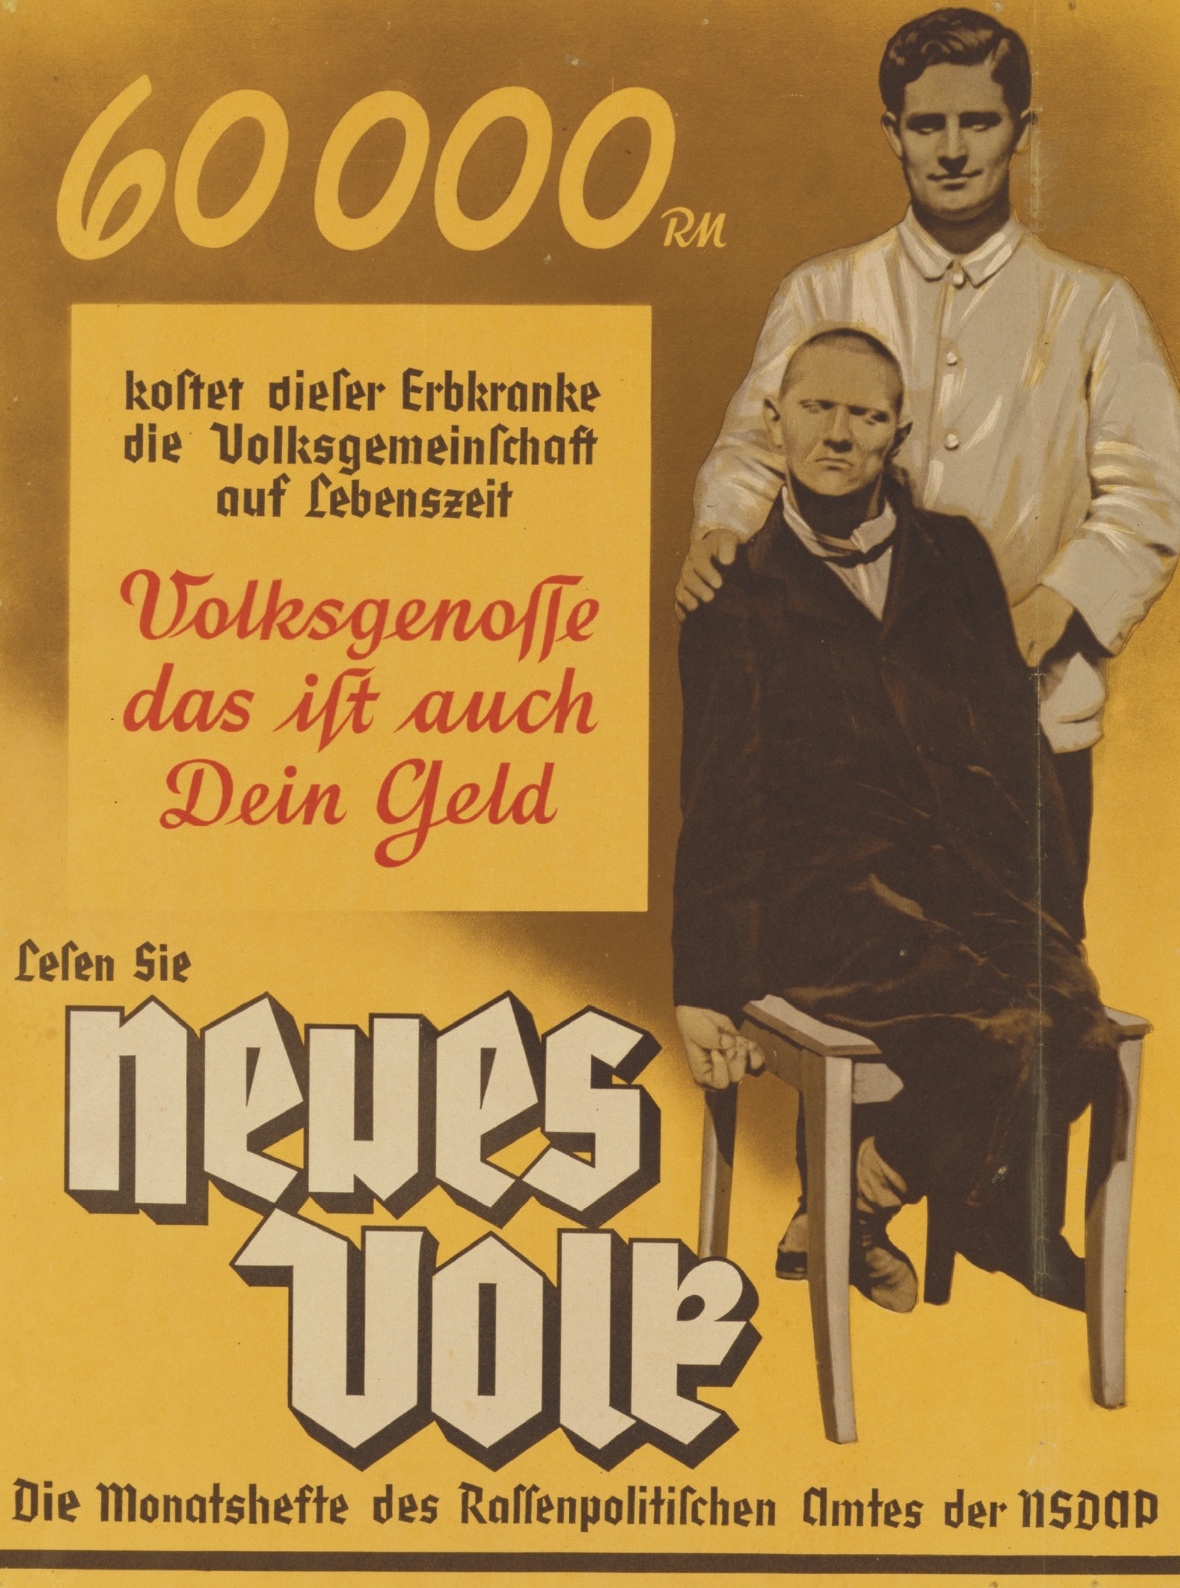 3 de agosto de 1941 En Münster, la Iglesia Católica denuncia la supuesta eutanasia de los nazis hacia discapacitados mentales